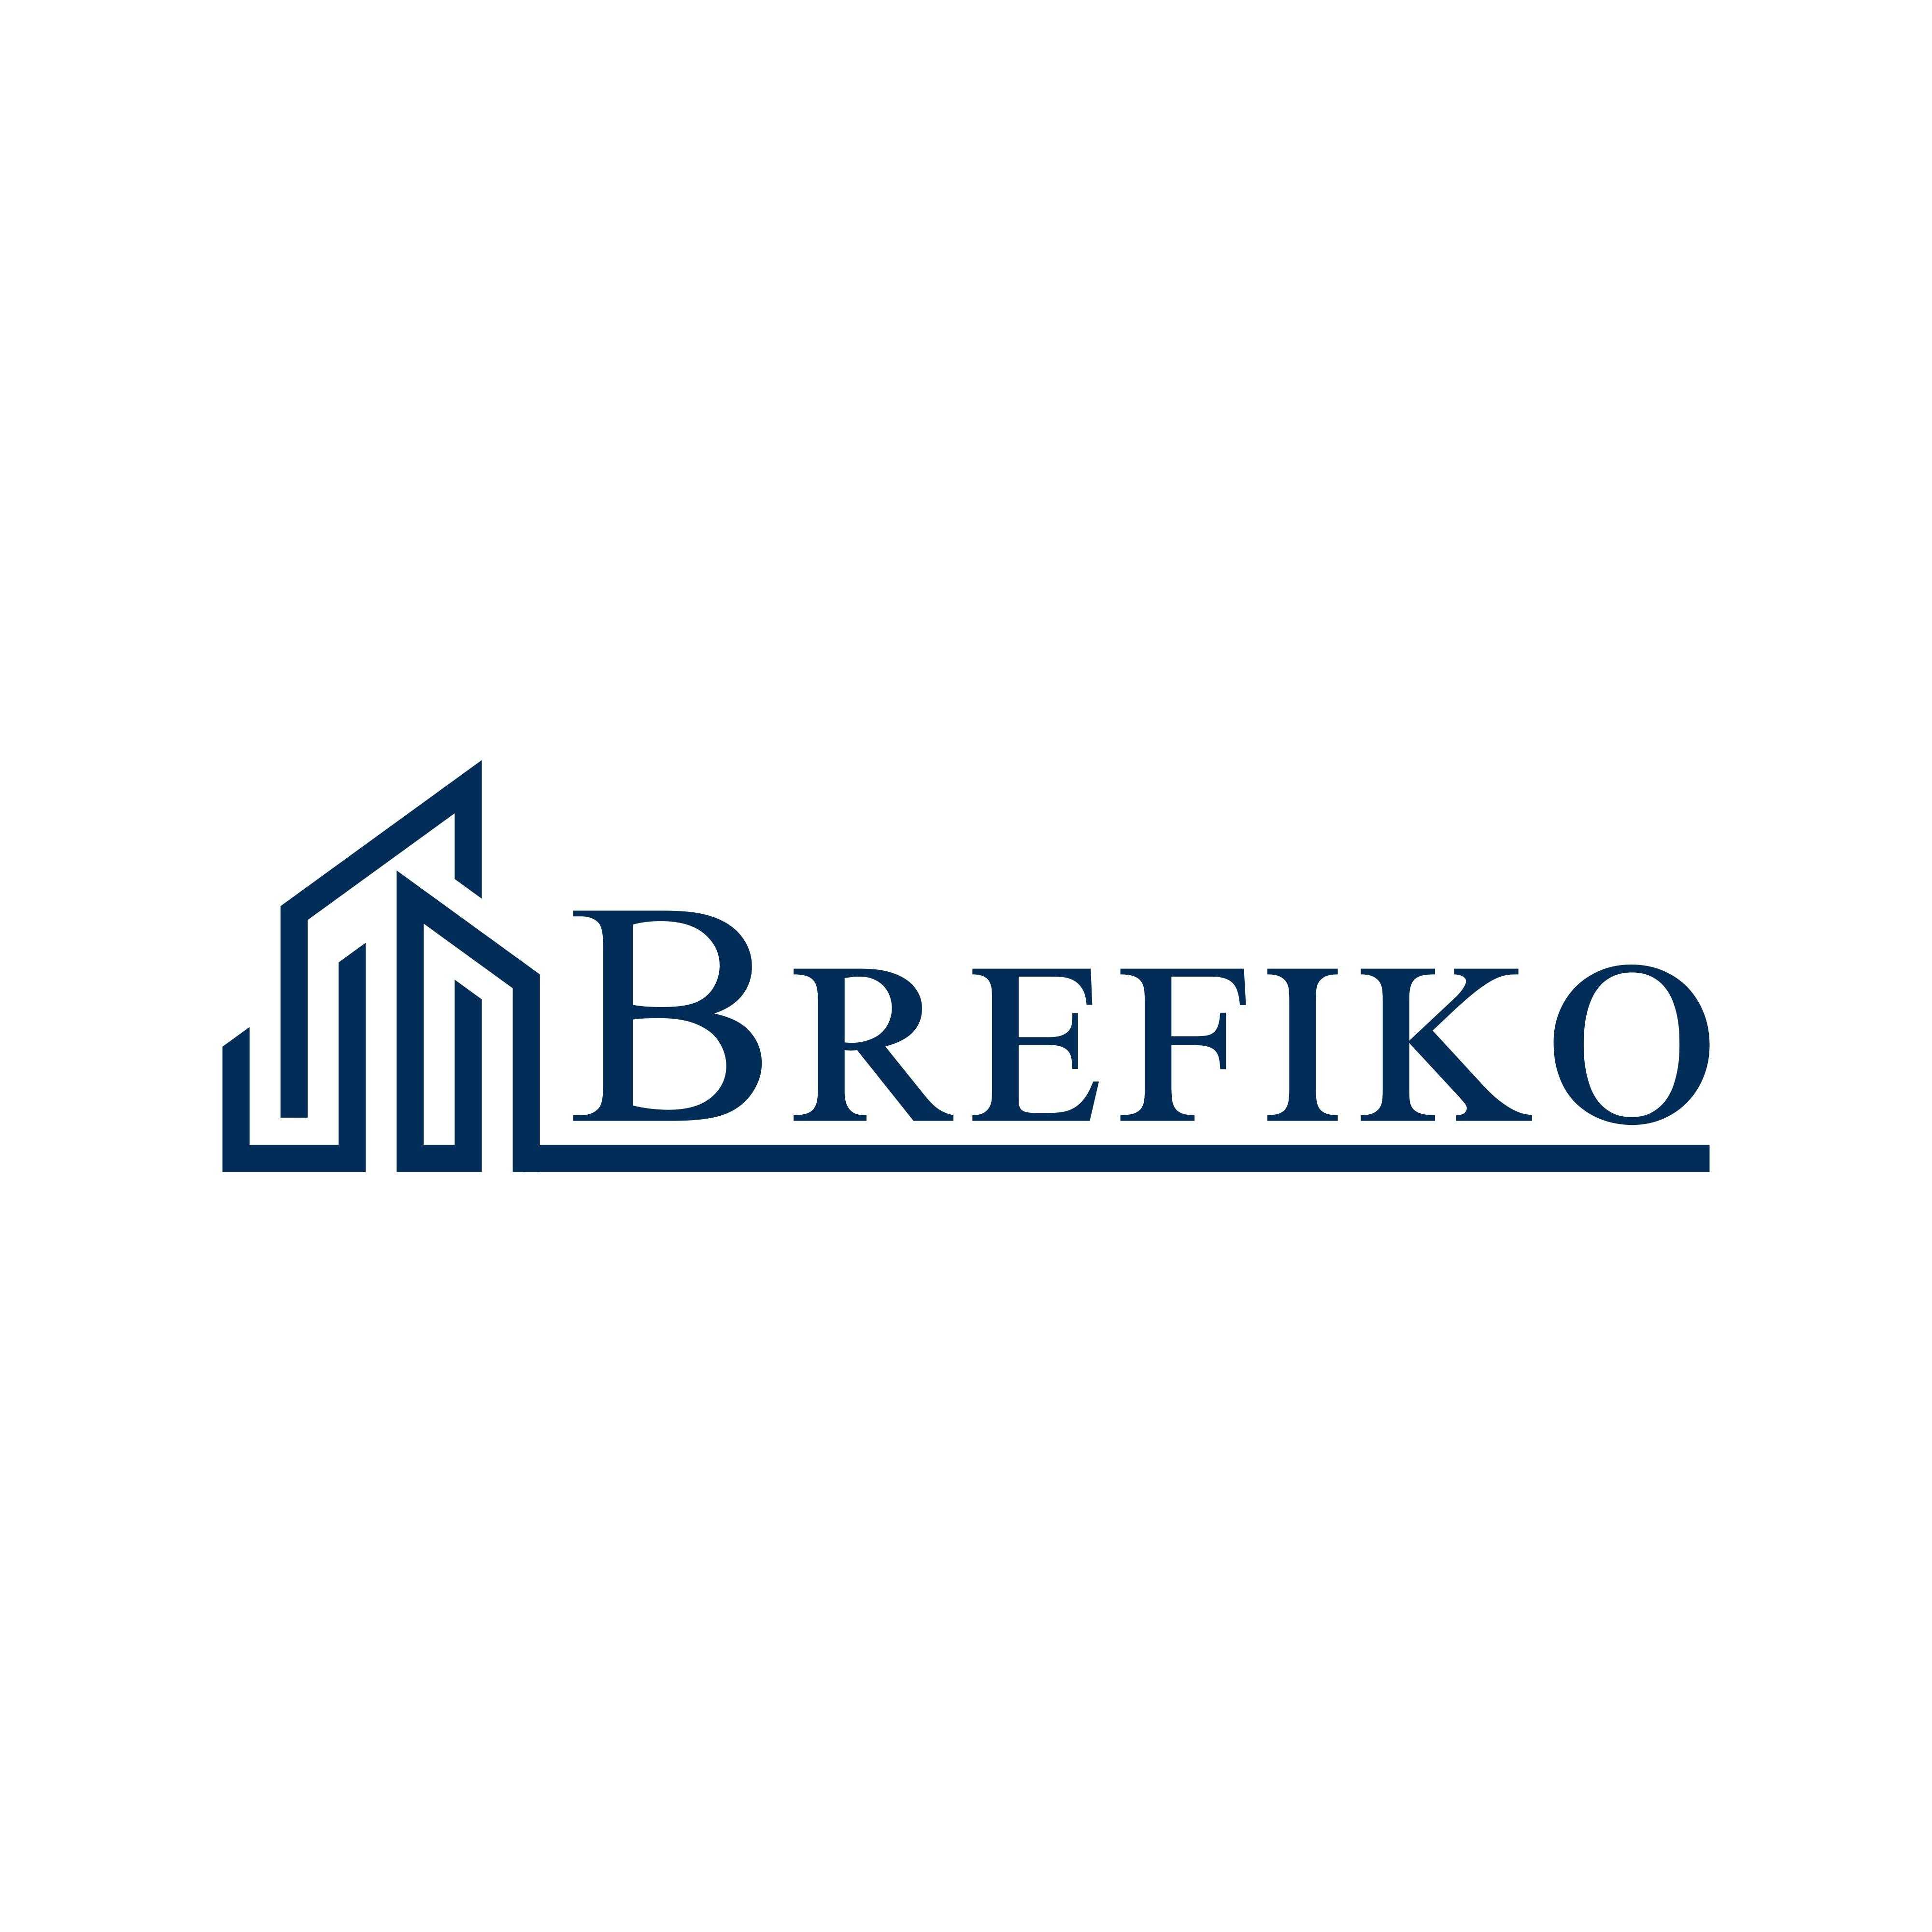 Bremer Finanzierungskontor Logo